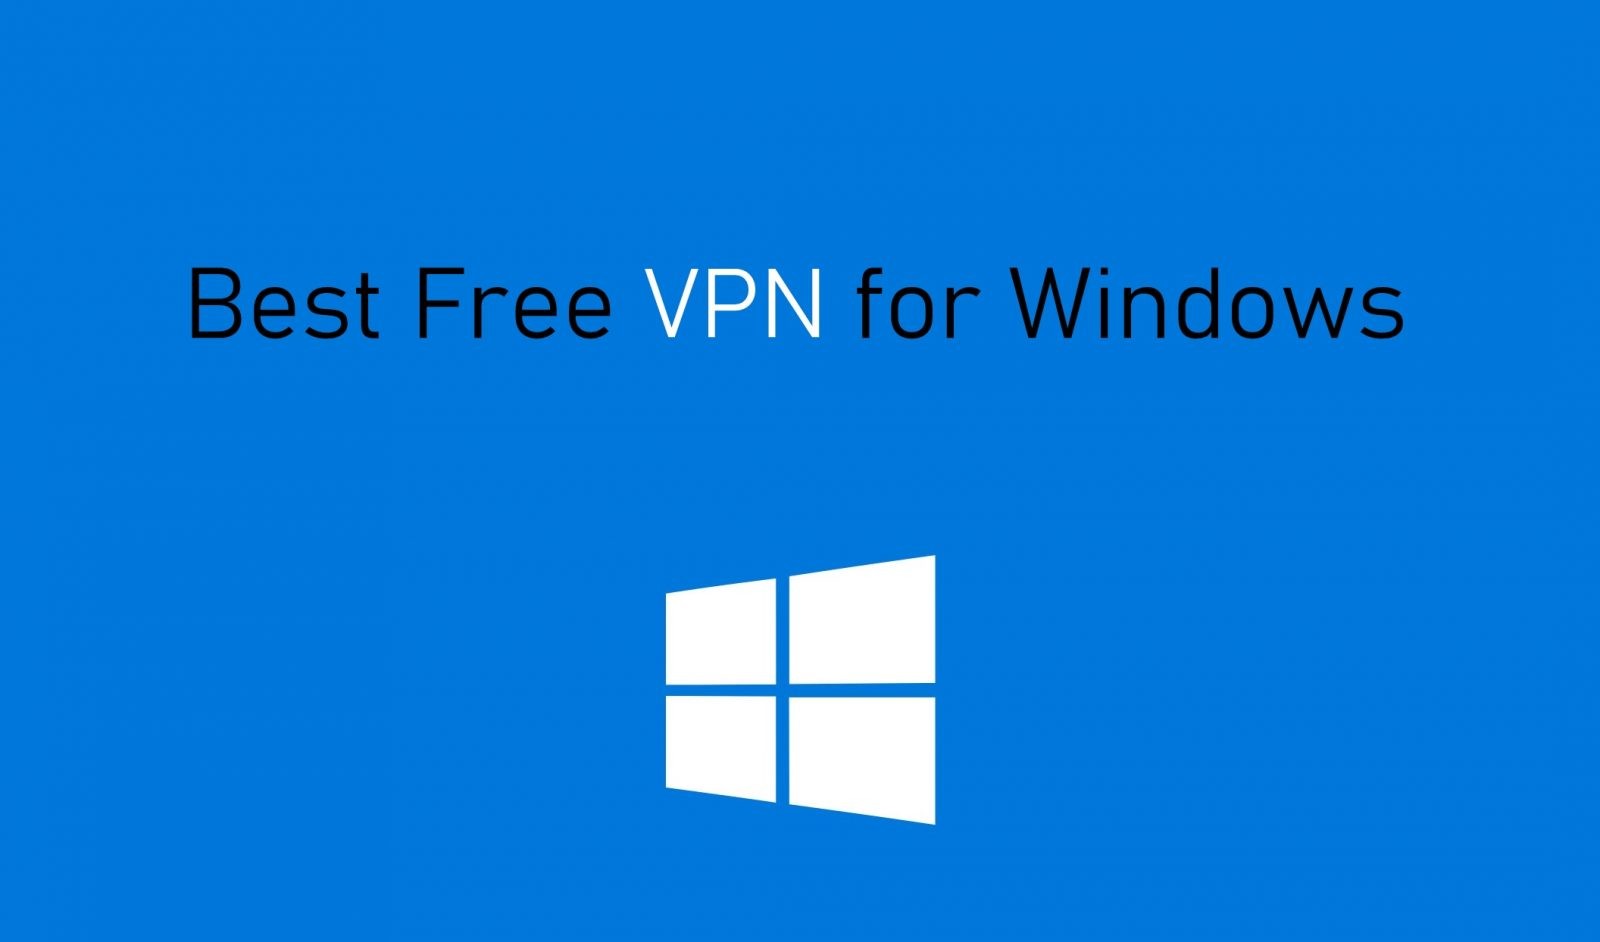 vpn for windows 8.1